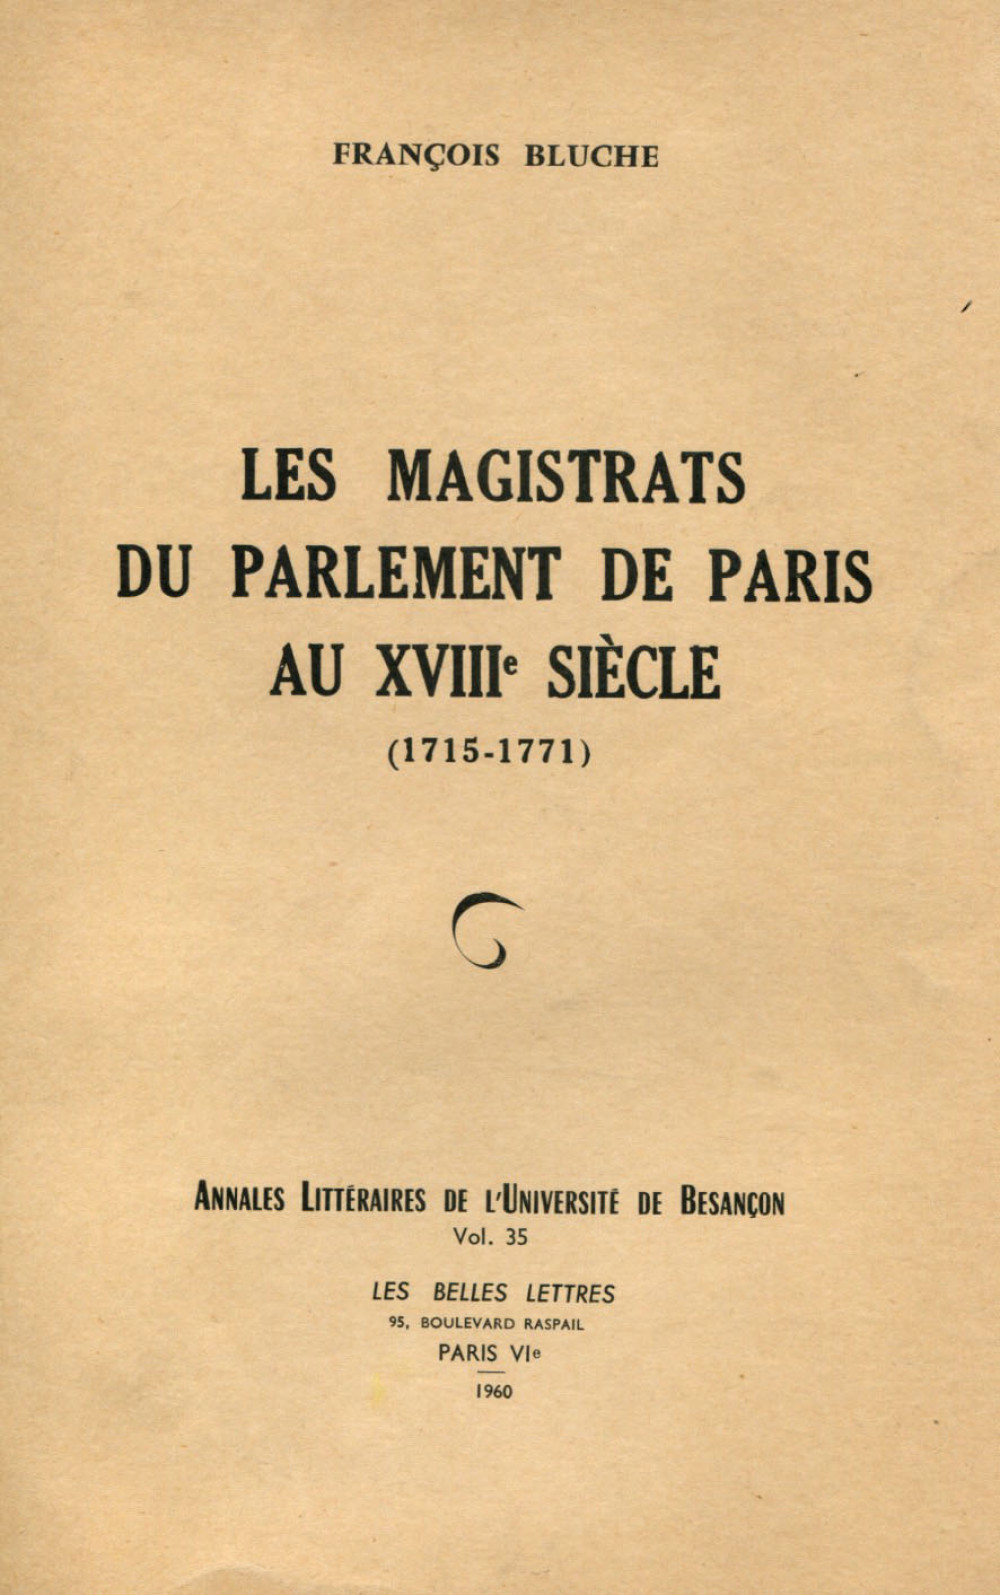 Les Magistrats du parlement de Paris au XVIIIe siècle